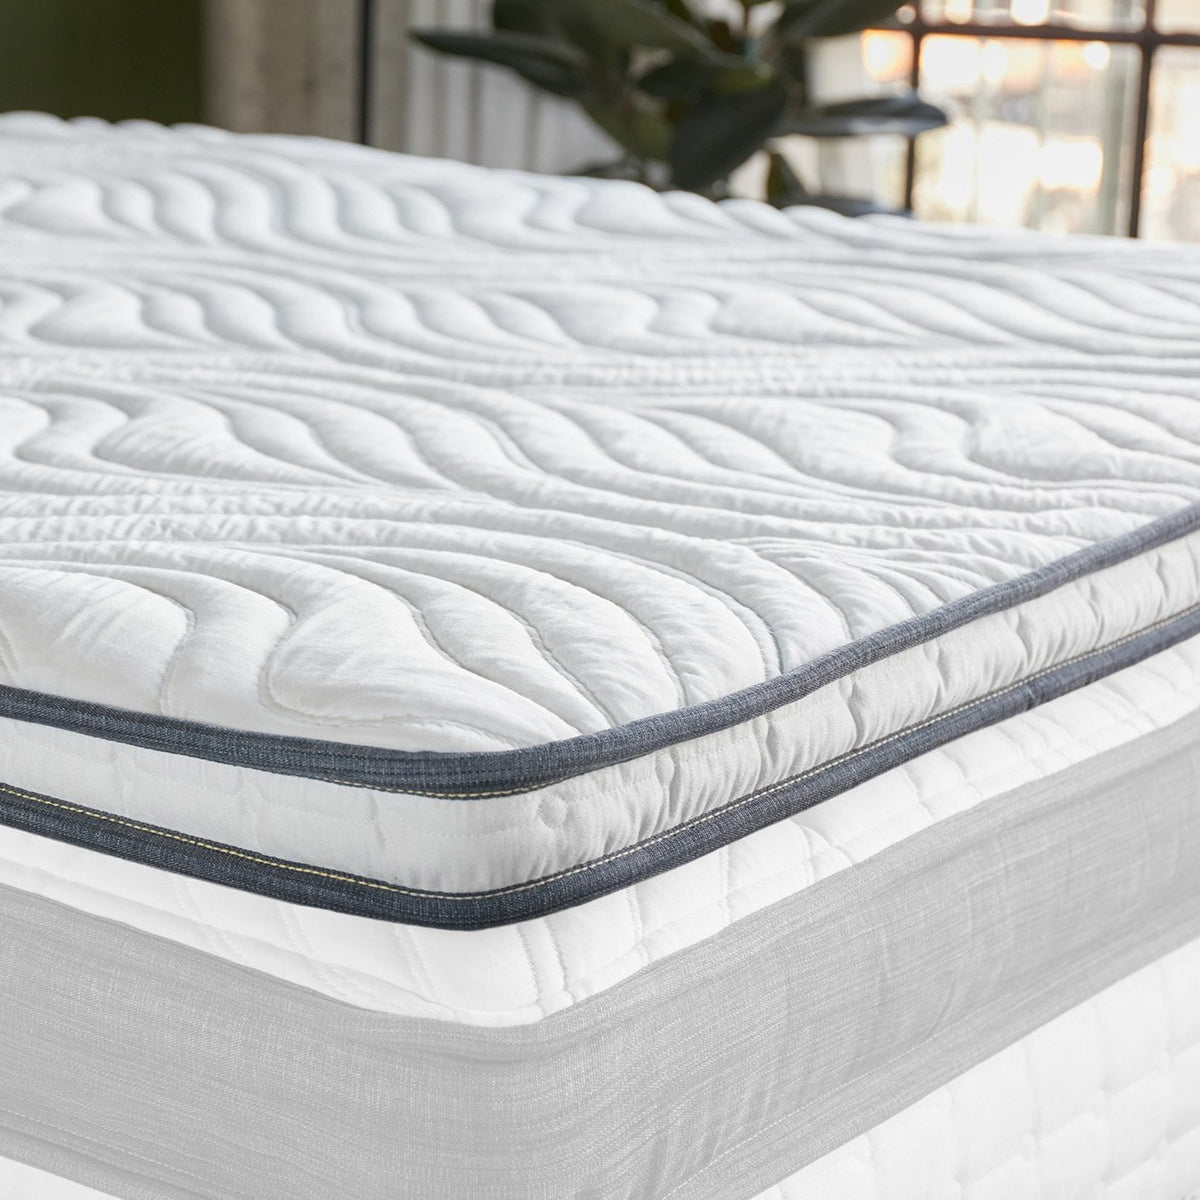 Memory foam mattress topper on a clean white mattress